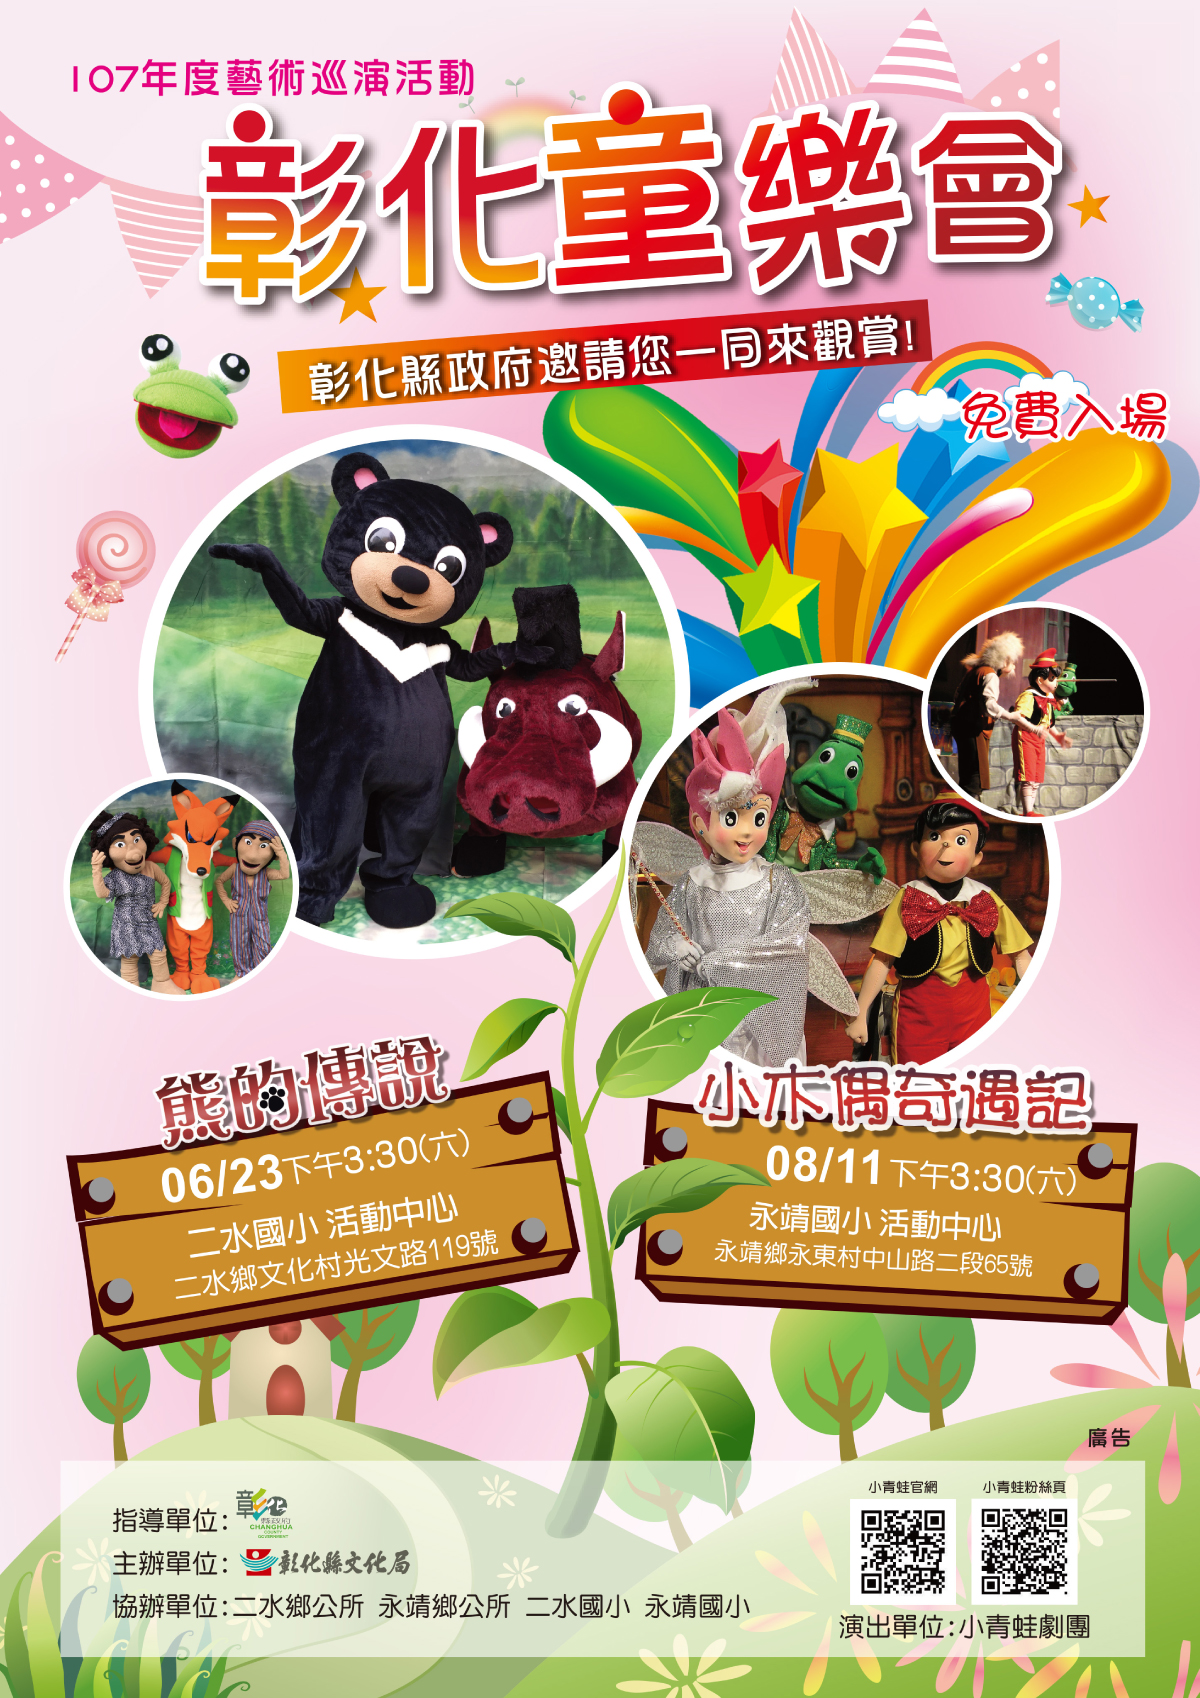 彰化童樂會 藝術巡演活動~小青蛙劇團《熊的傳說》演出